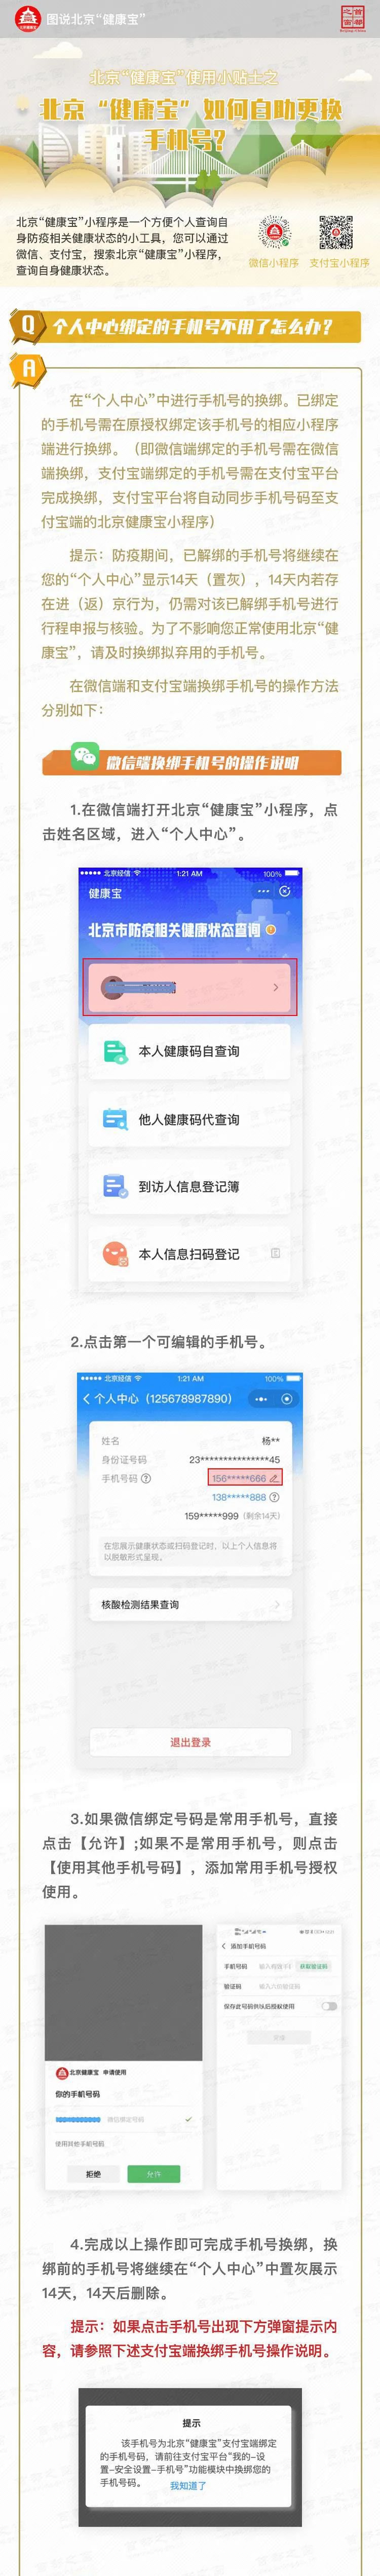 北京健康宝自助变更手机号怎么操作 北京健康宝手机号变更教程分享